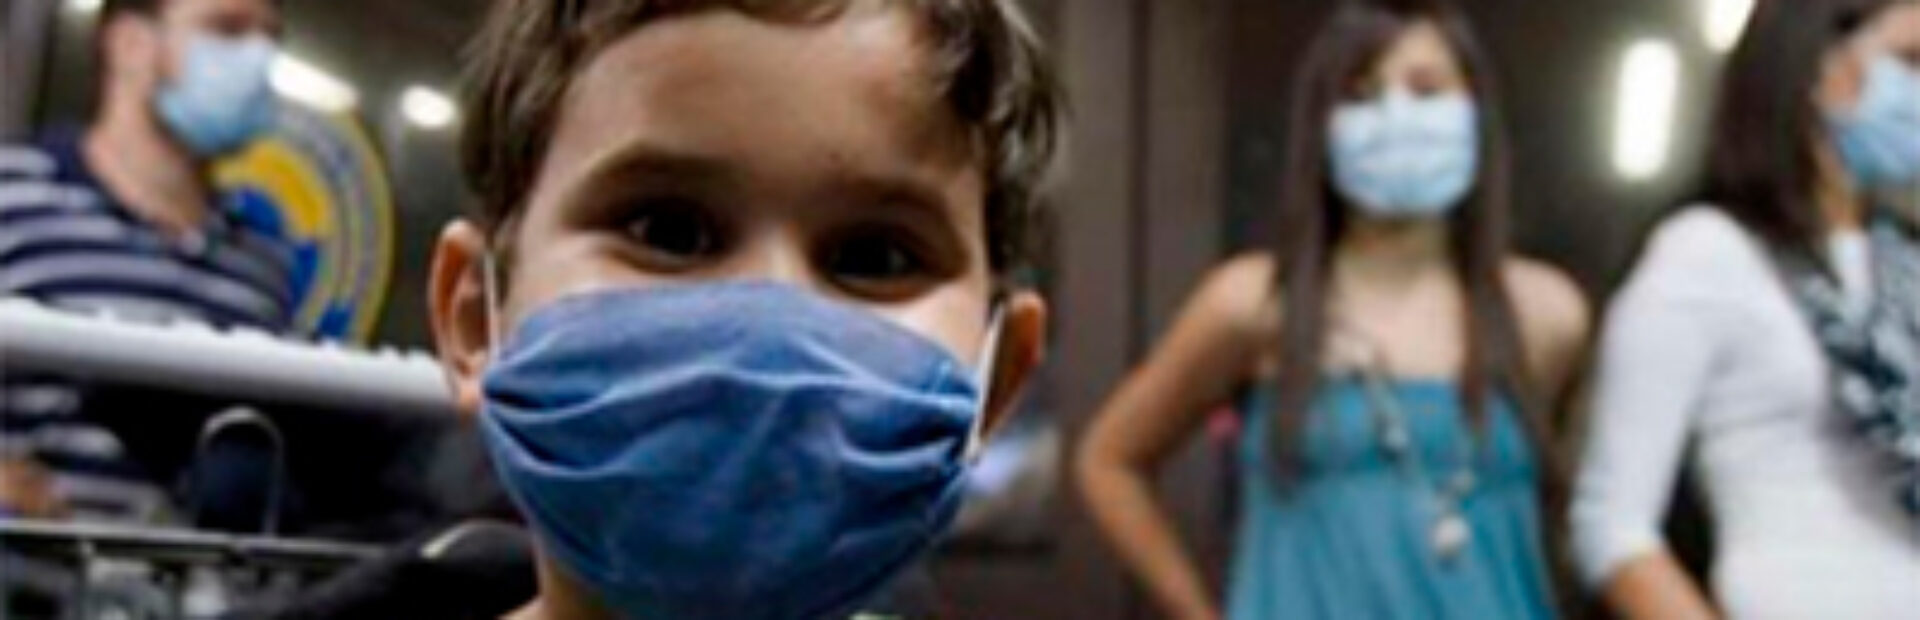 Duelo infantil en medio de la pandemia – Ddobleclick.cl